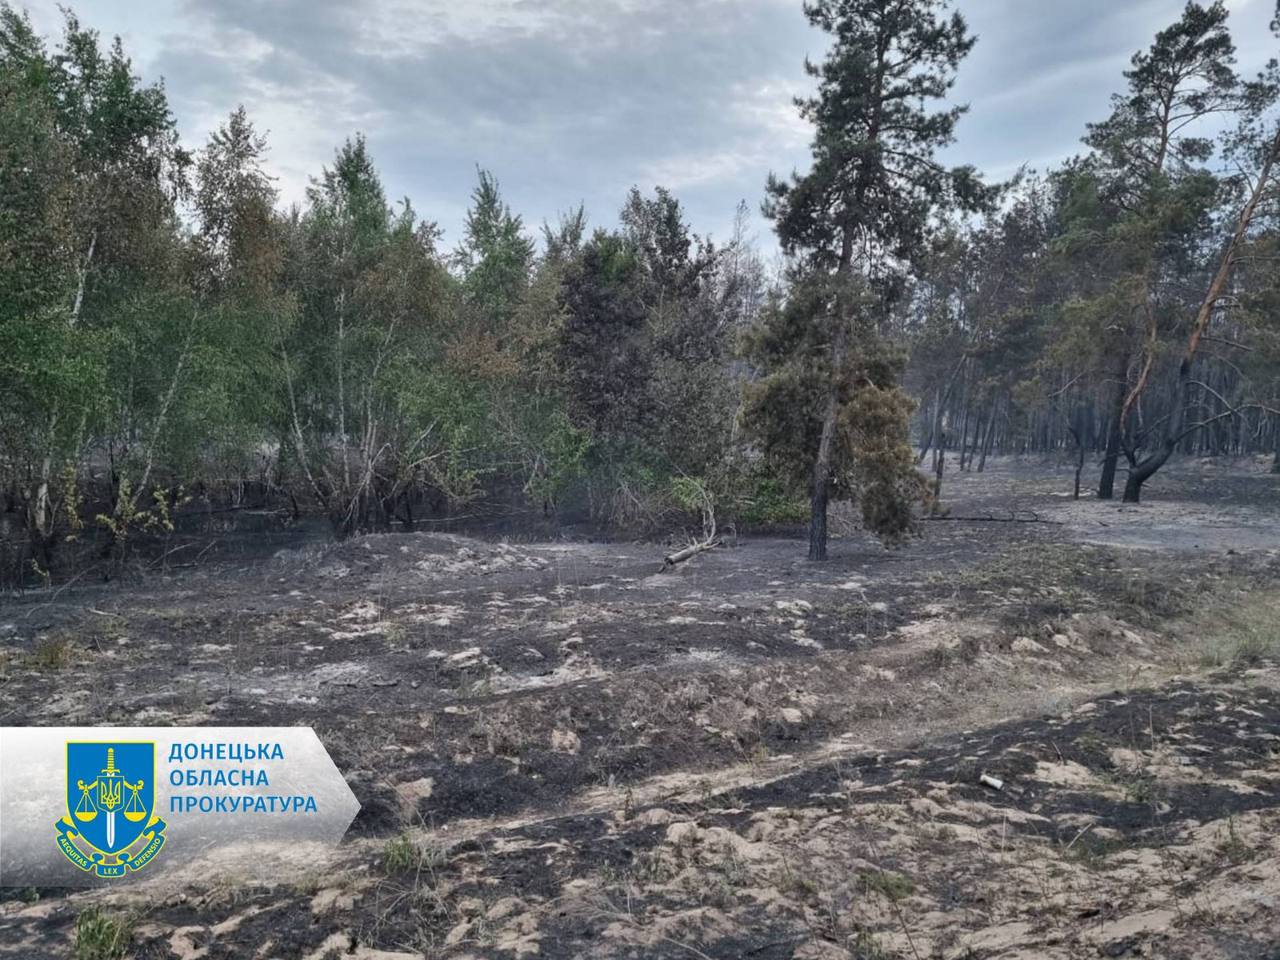 Фото последствий лесного пожара. Источник - прокуратура донецкой области